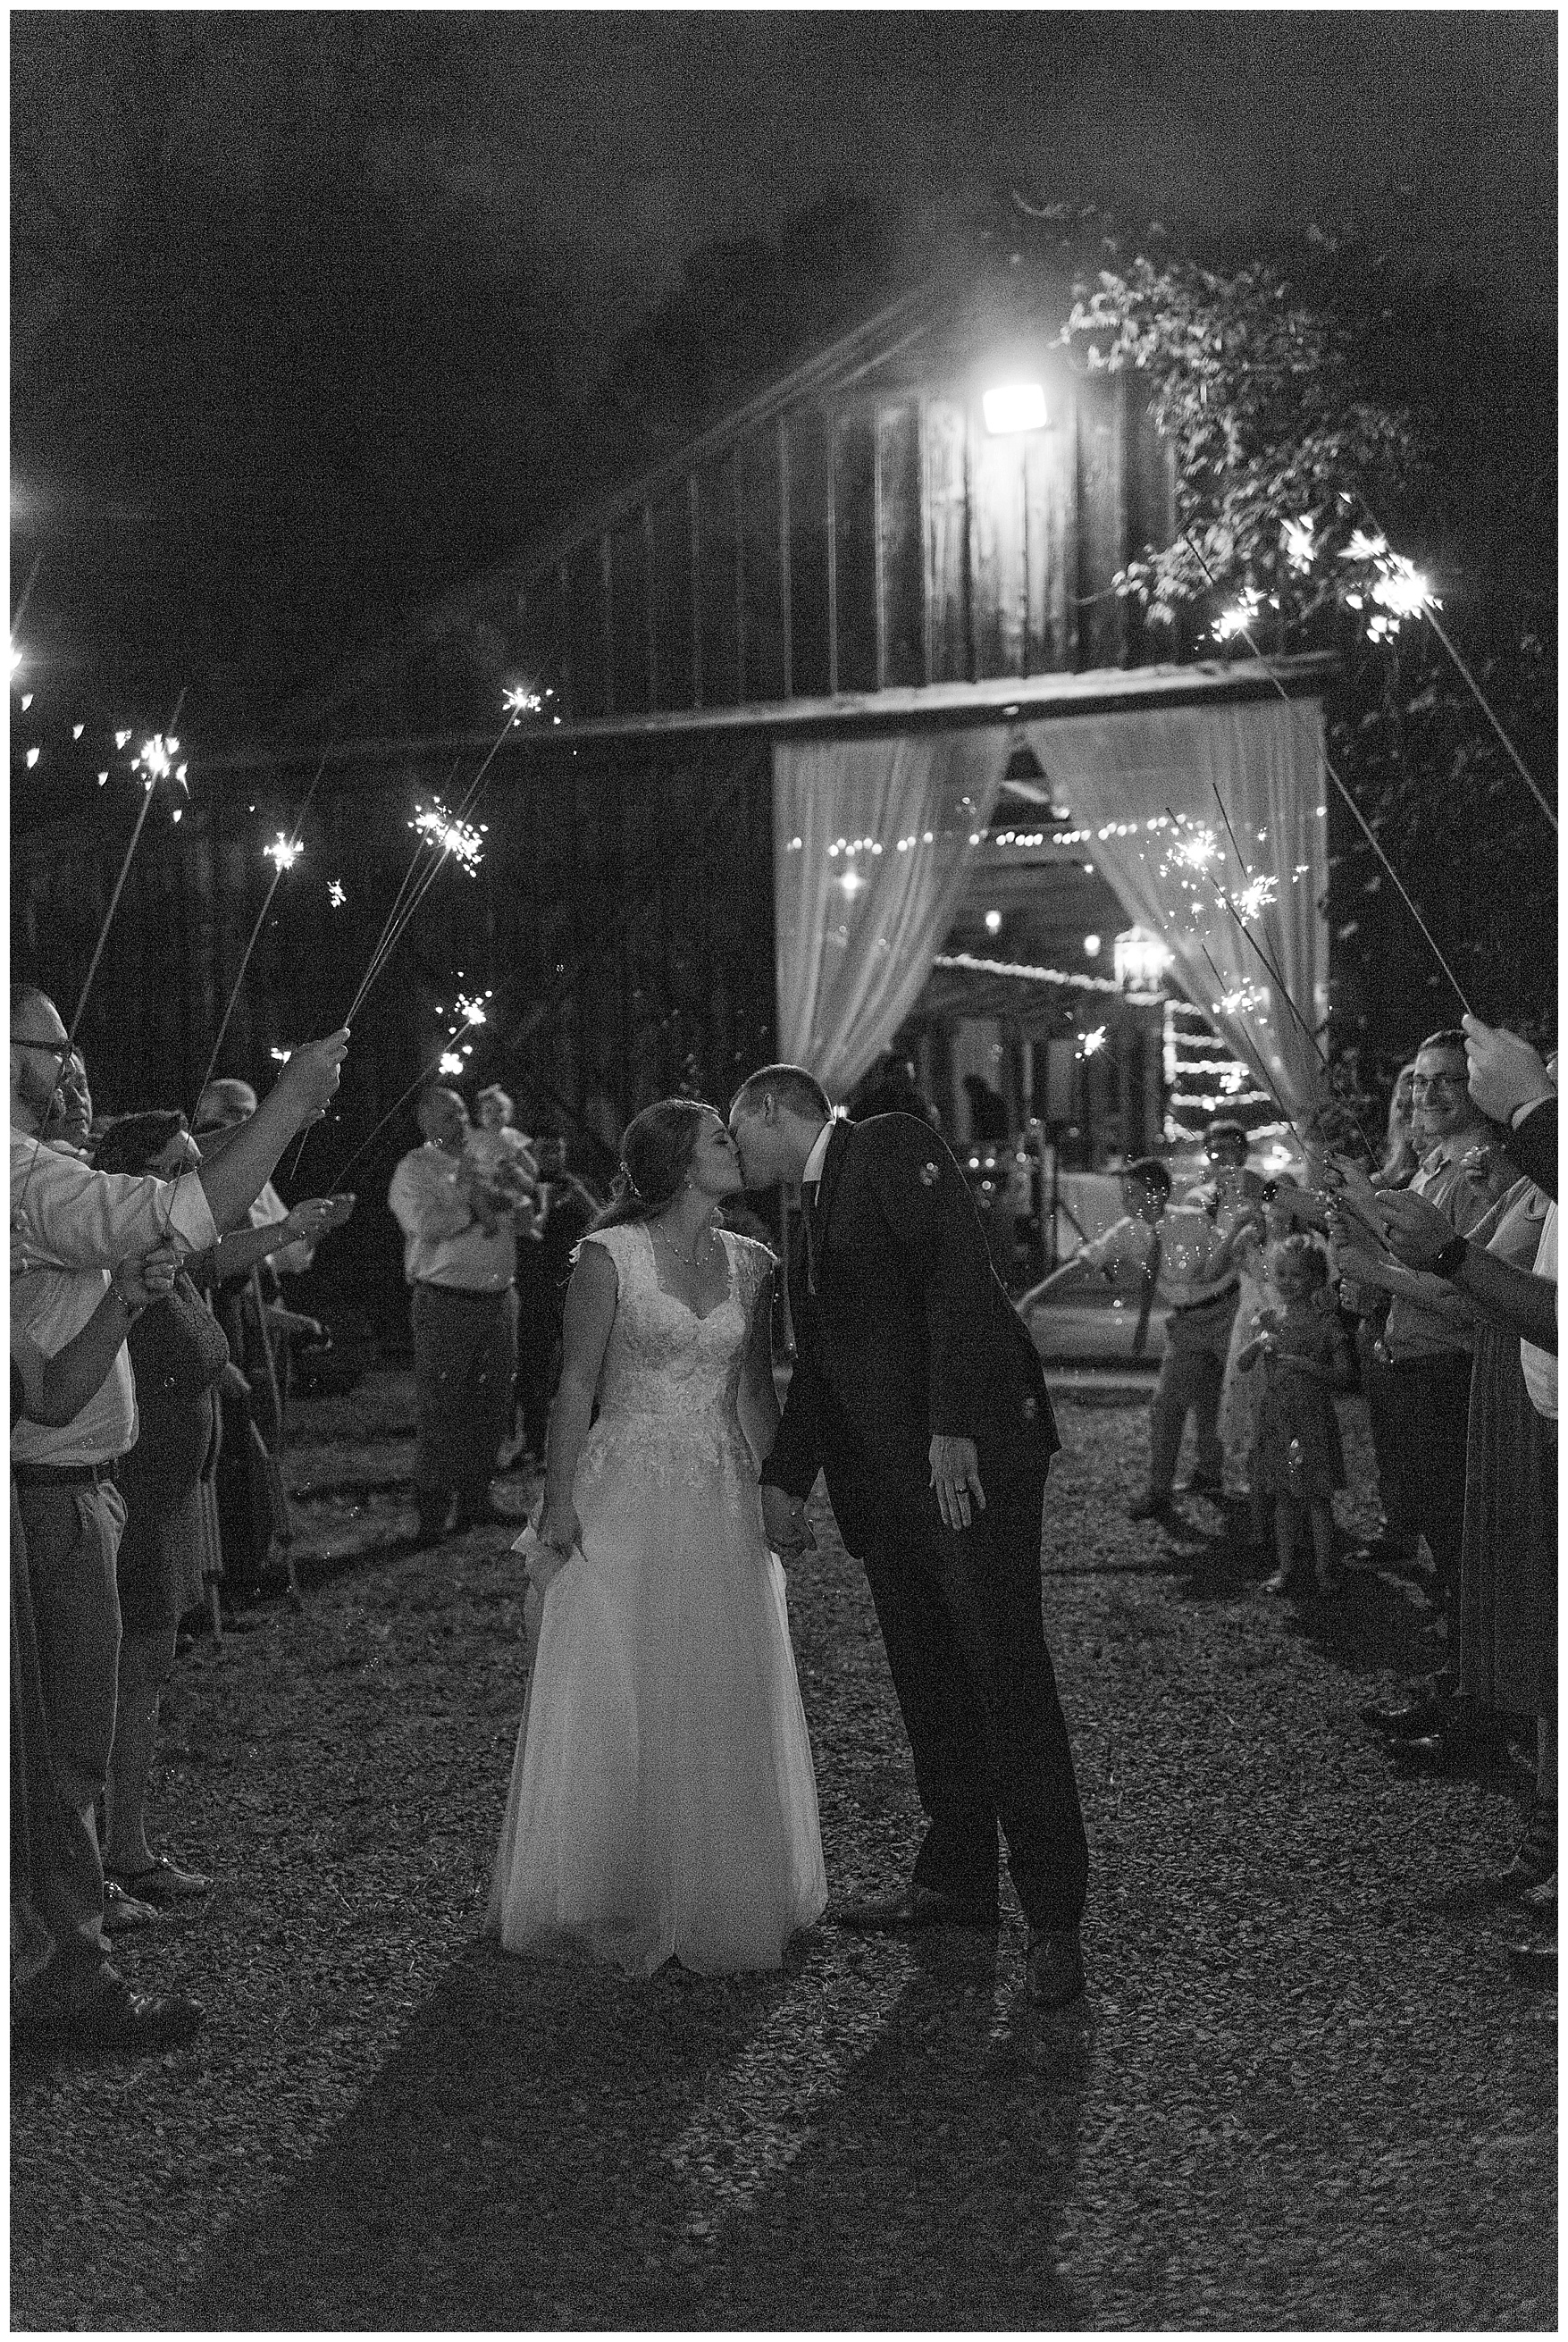 Wedding at Murray Hill in Leesburg, Virginia || Leesburg, VA Wedding Photographer || Ashley Eiban Photography